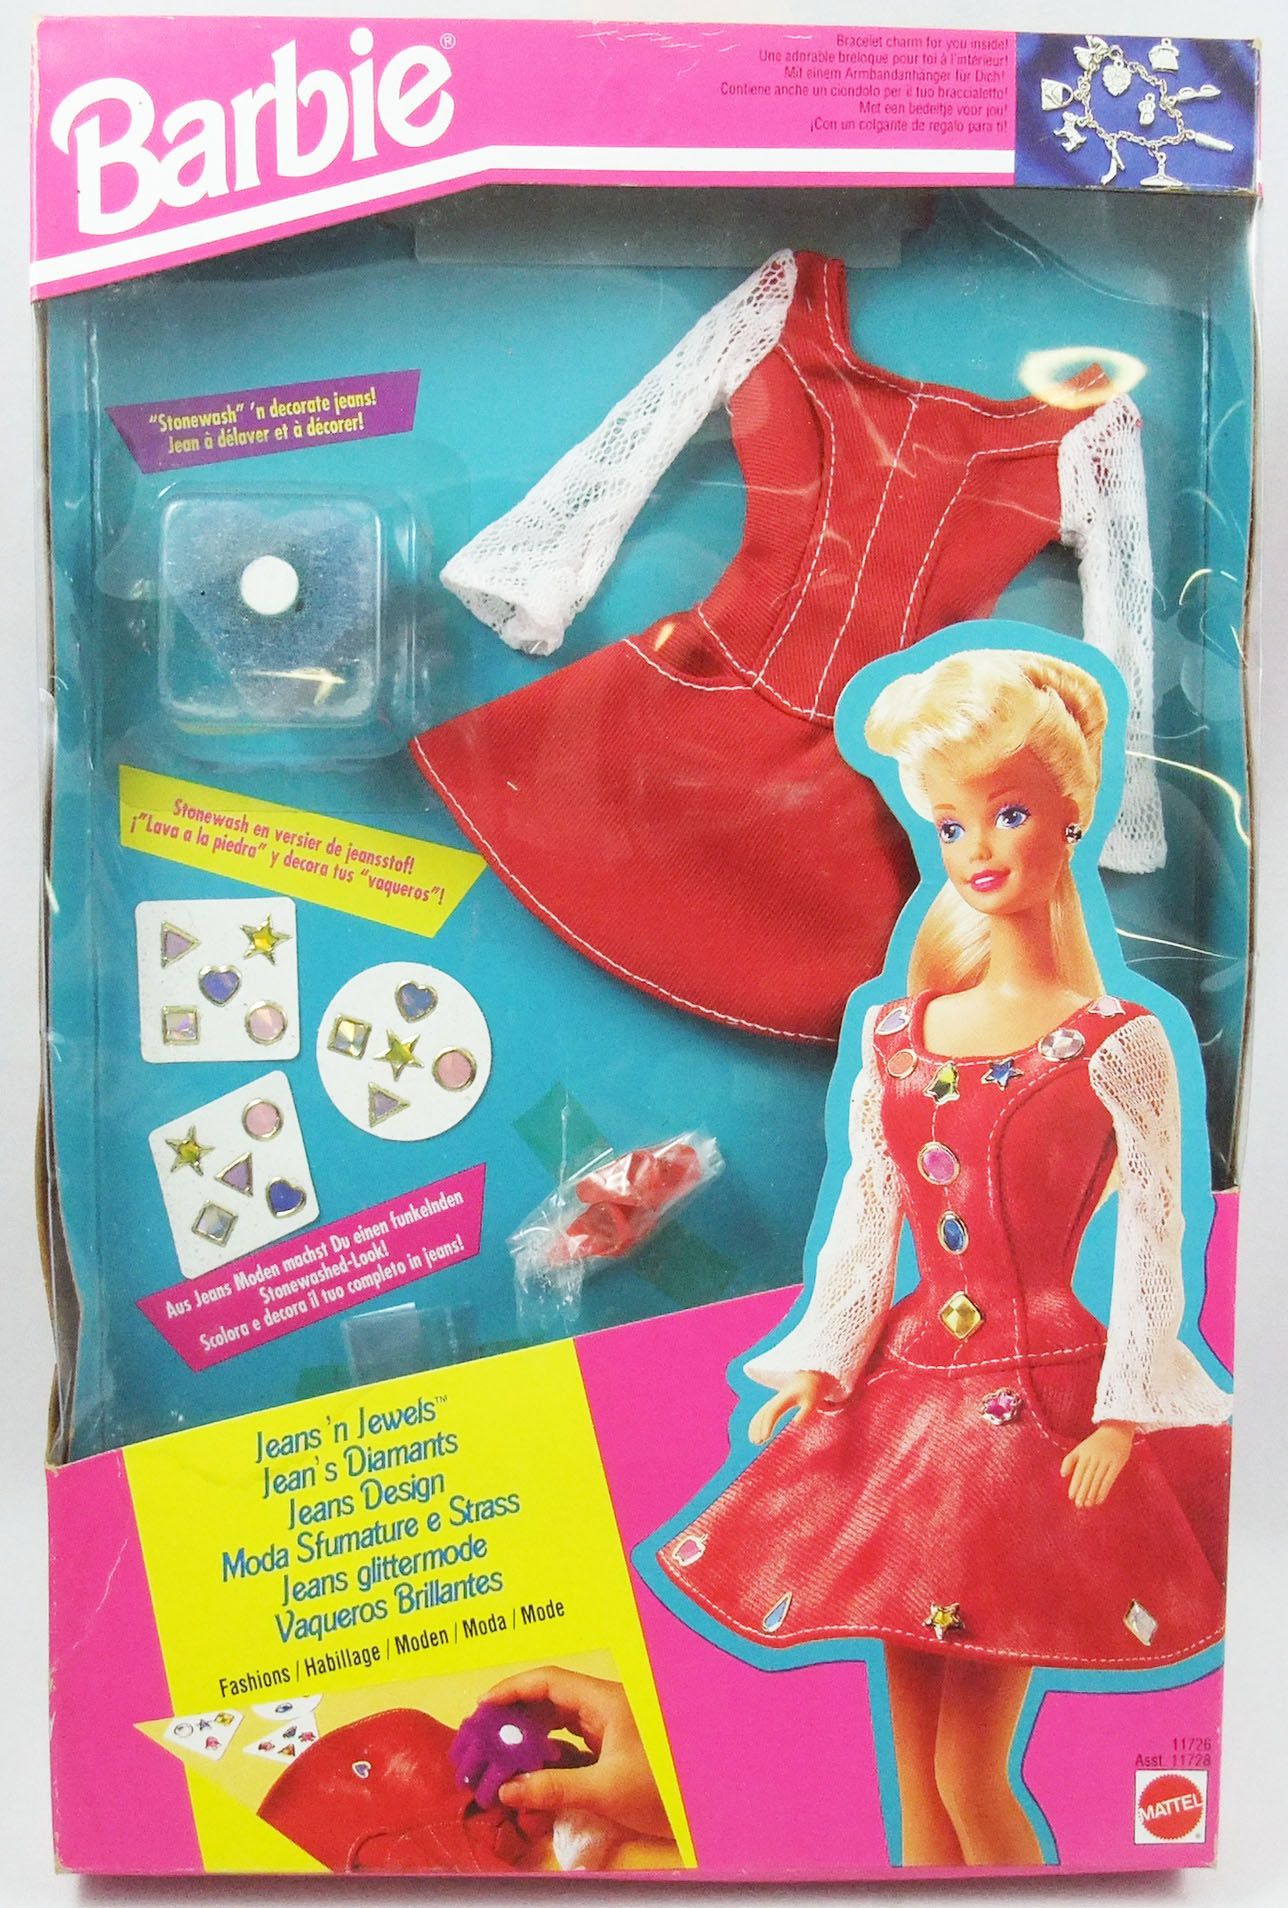 Tegen de wil Ingenieurs zacht Barbie - Jeans 'n Jewels Fashions - Mattel 1993 (ref.11726)